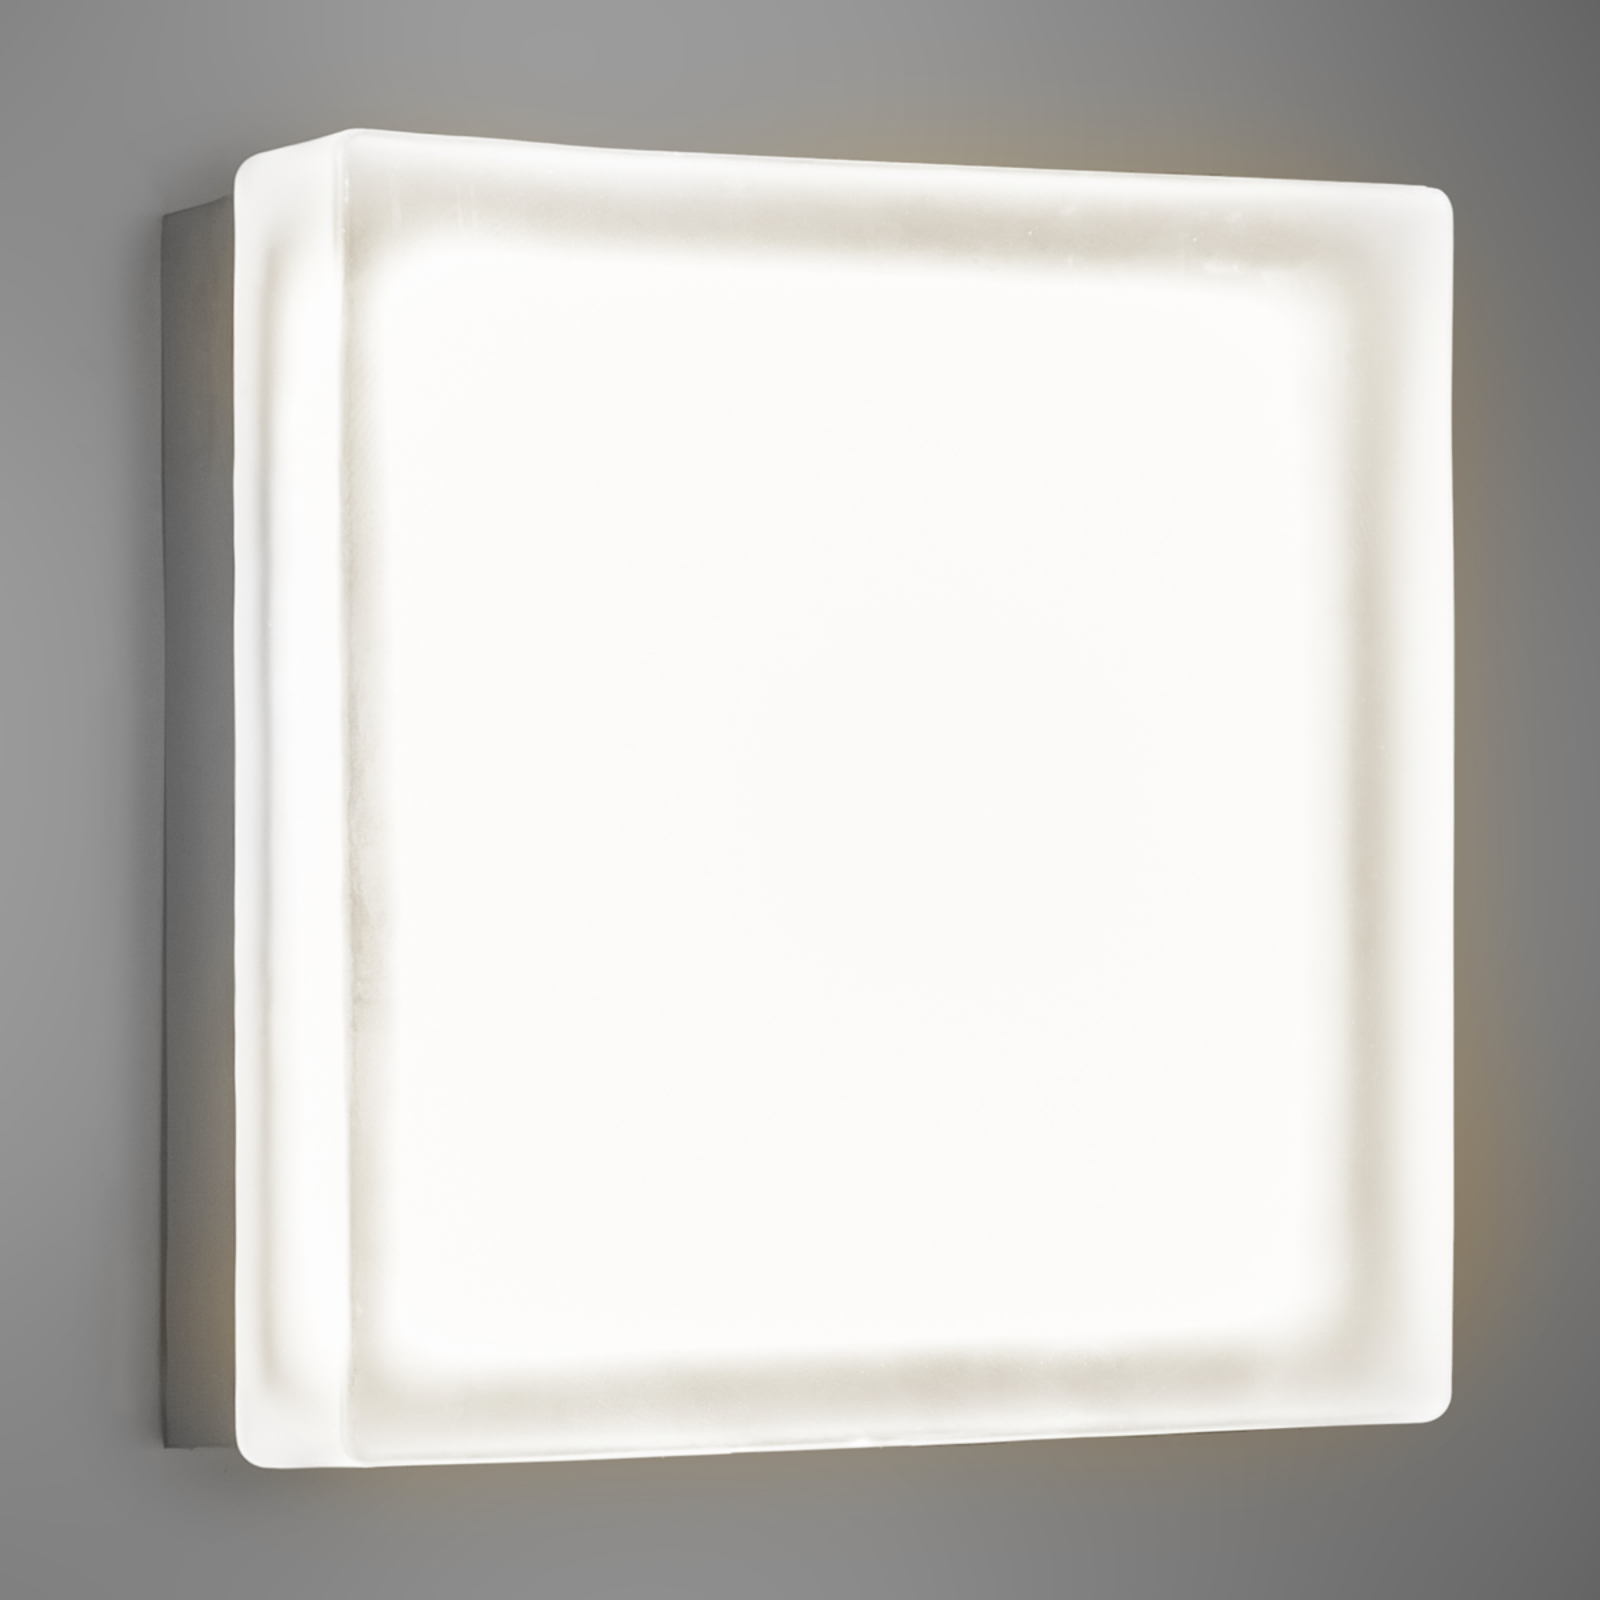 Briq 02 square LED wall light warm white